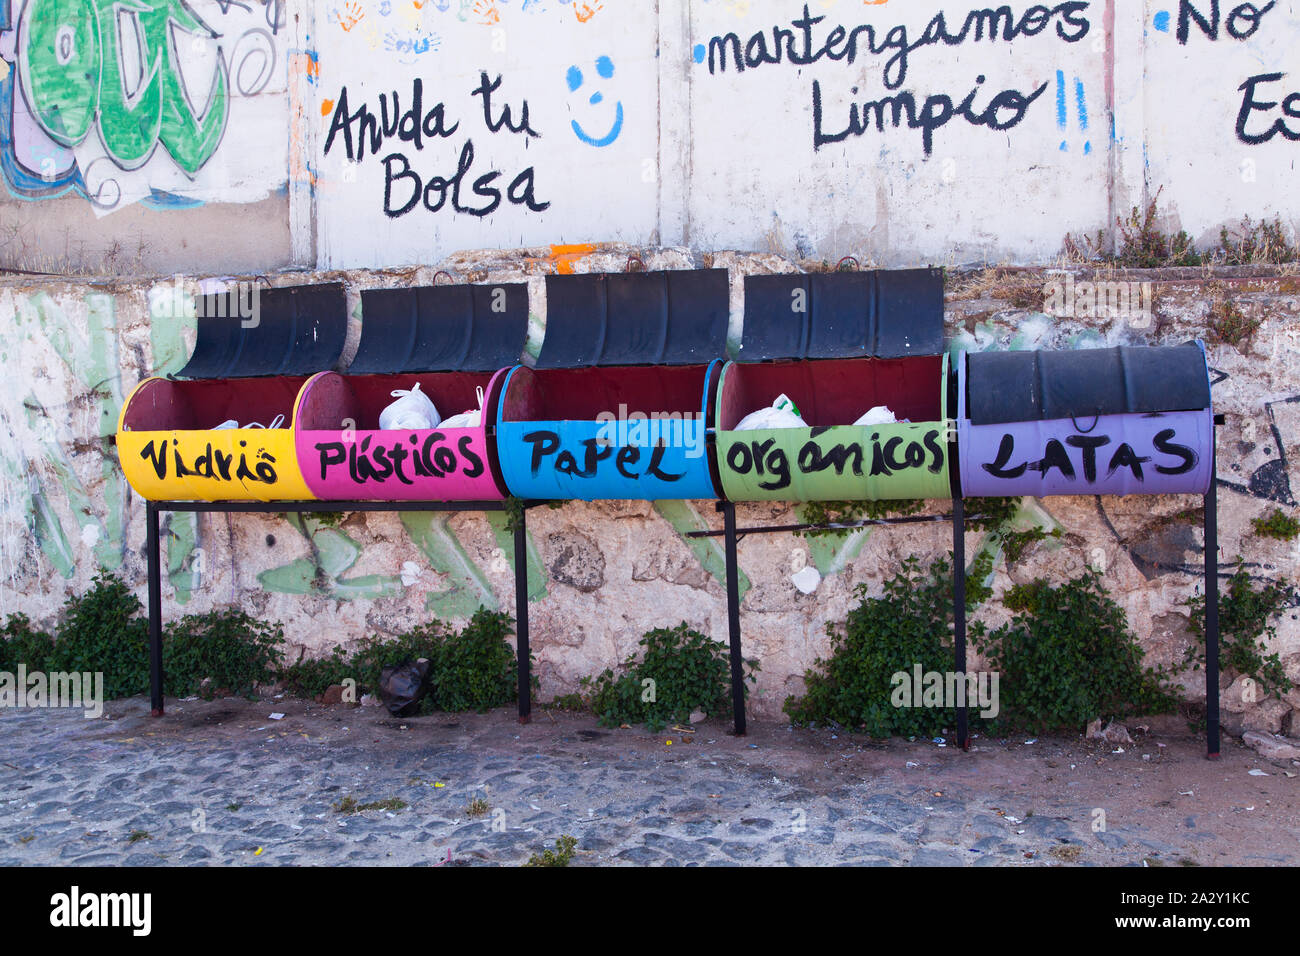 Recycling art in Valparaiso. Stock Photo